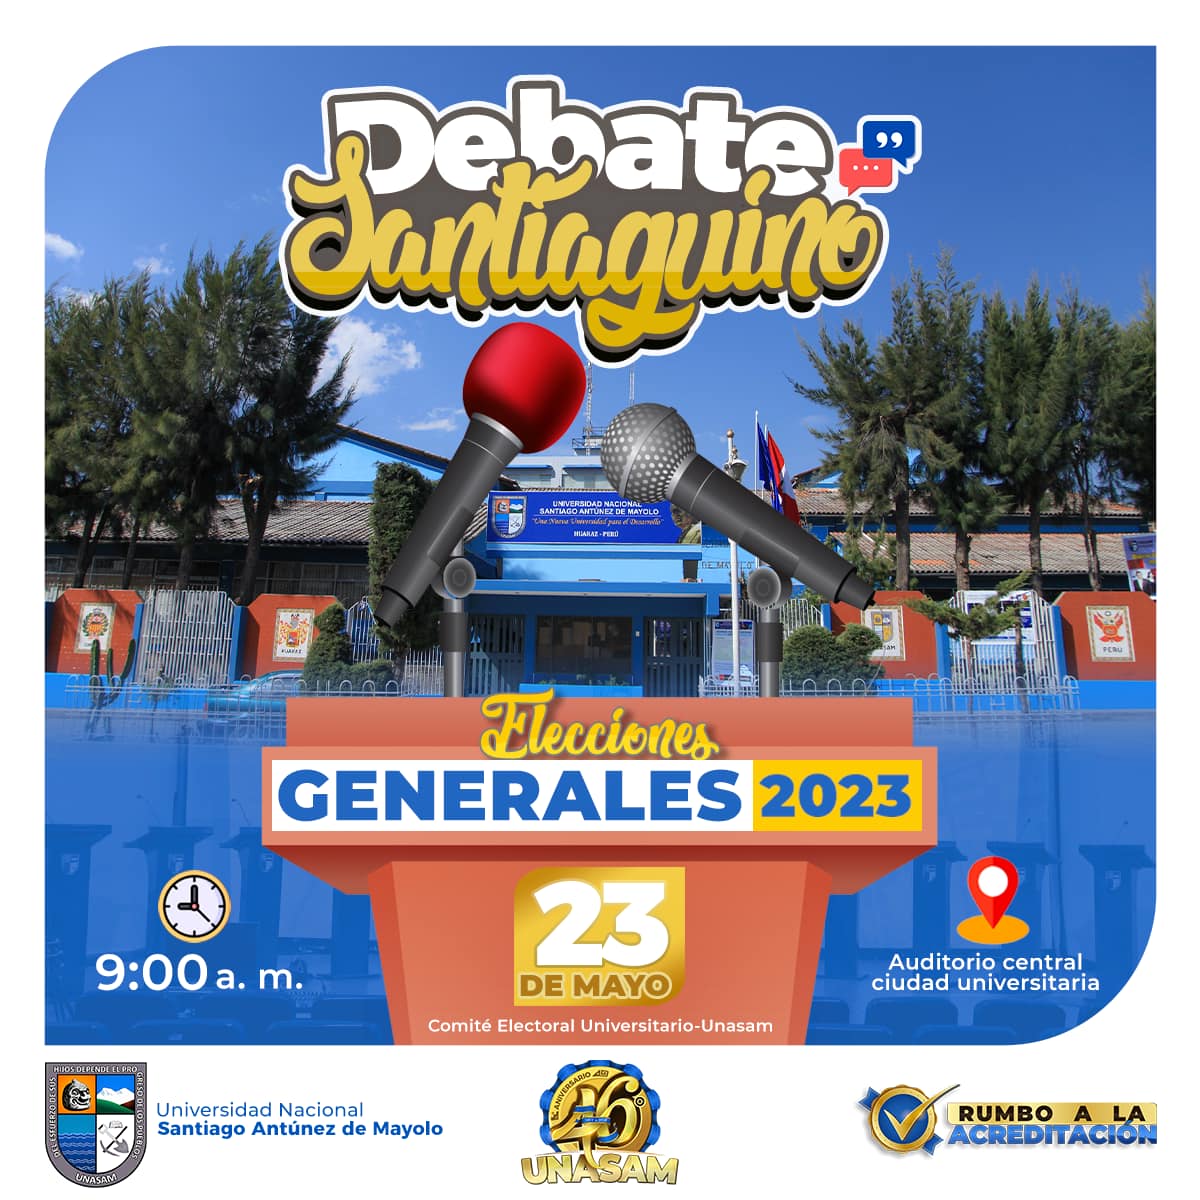  														DEBATE SANTIAGUINO- ELECCIONES GENERALES 2023
														